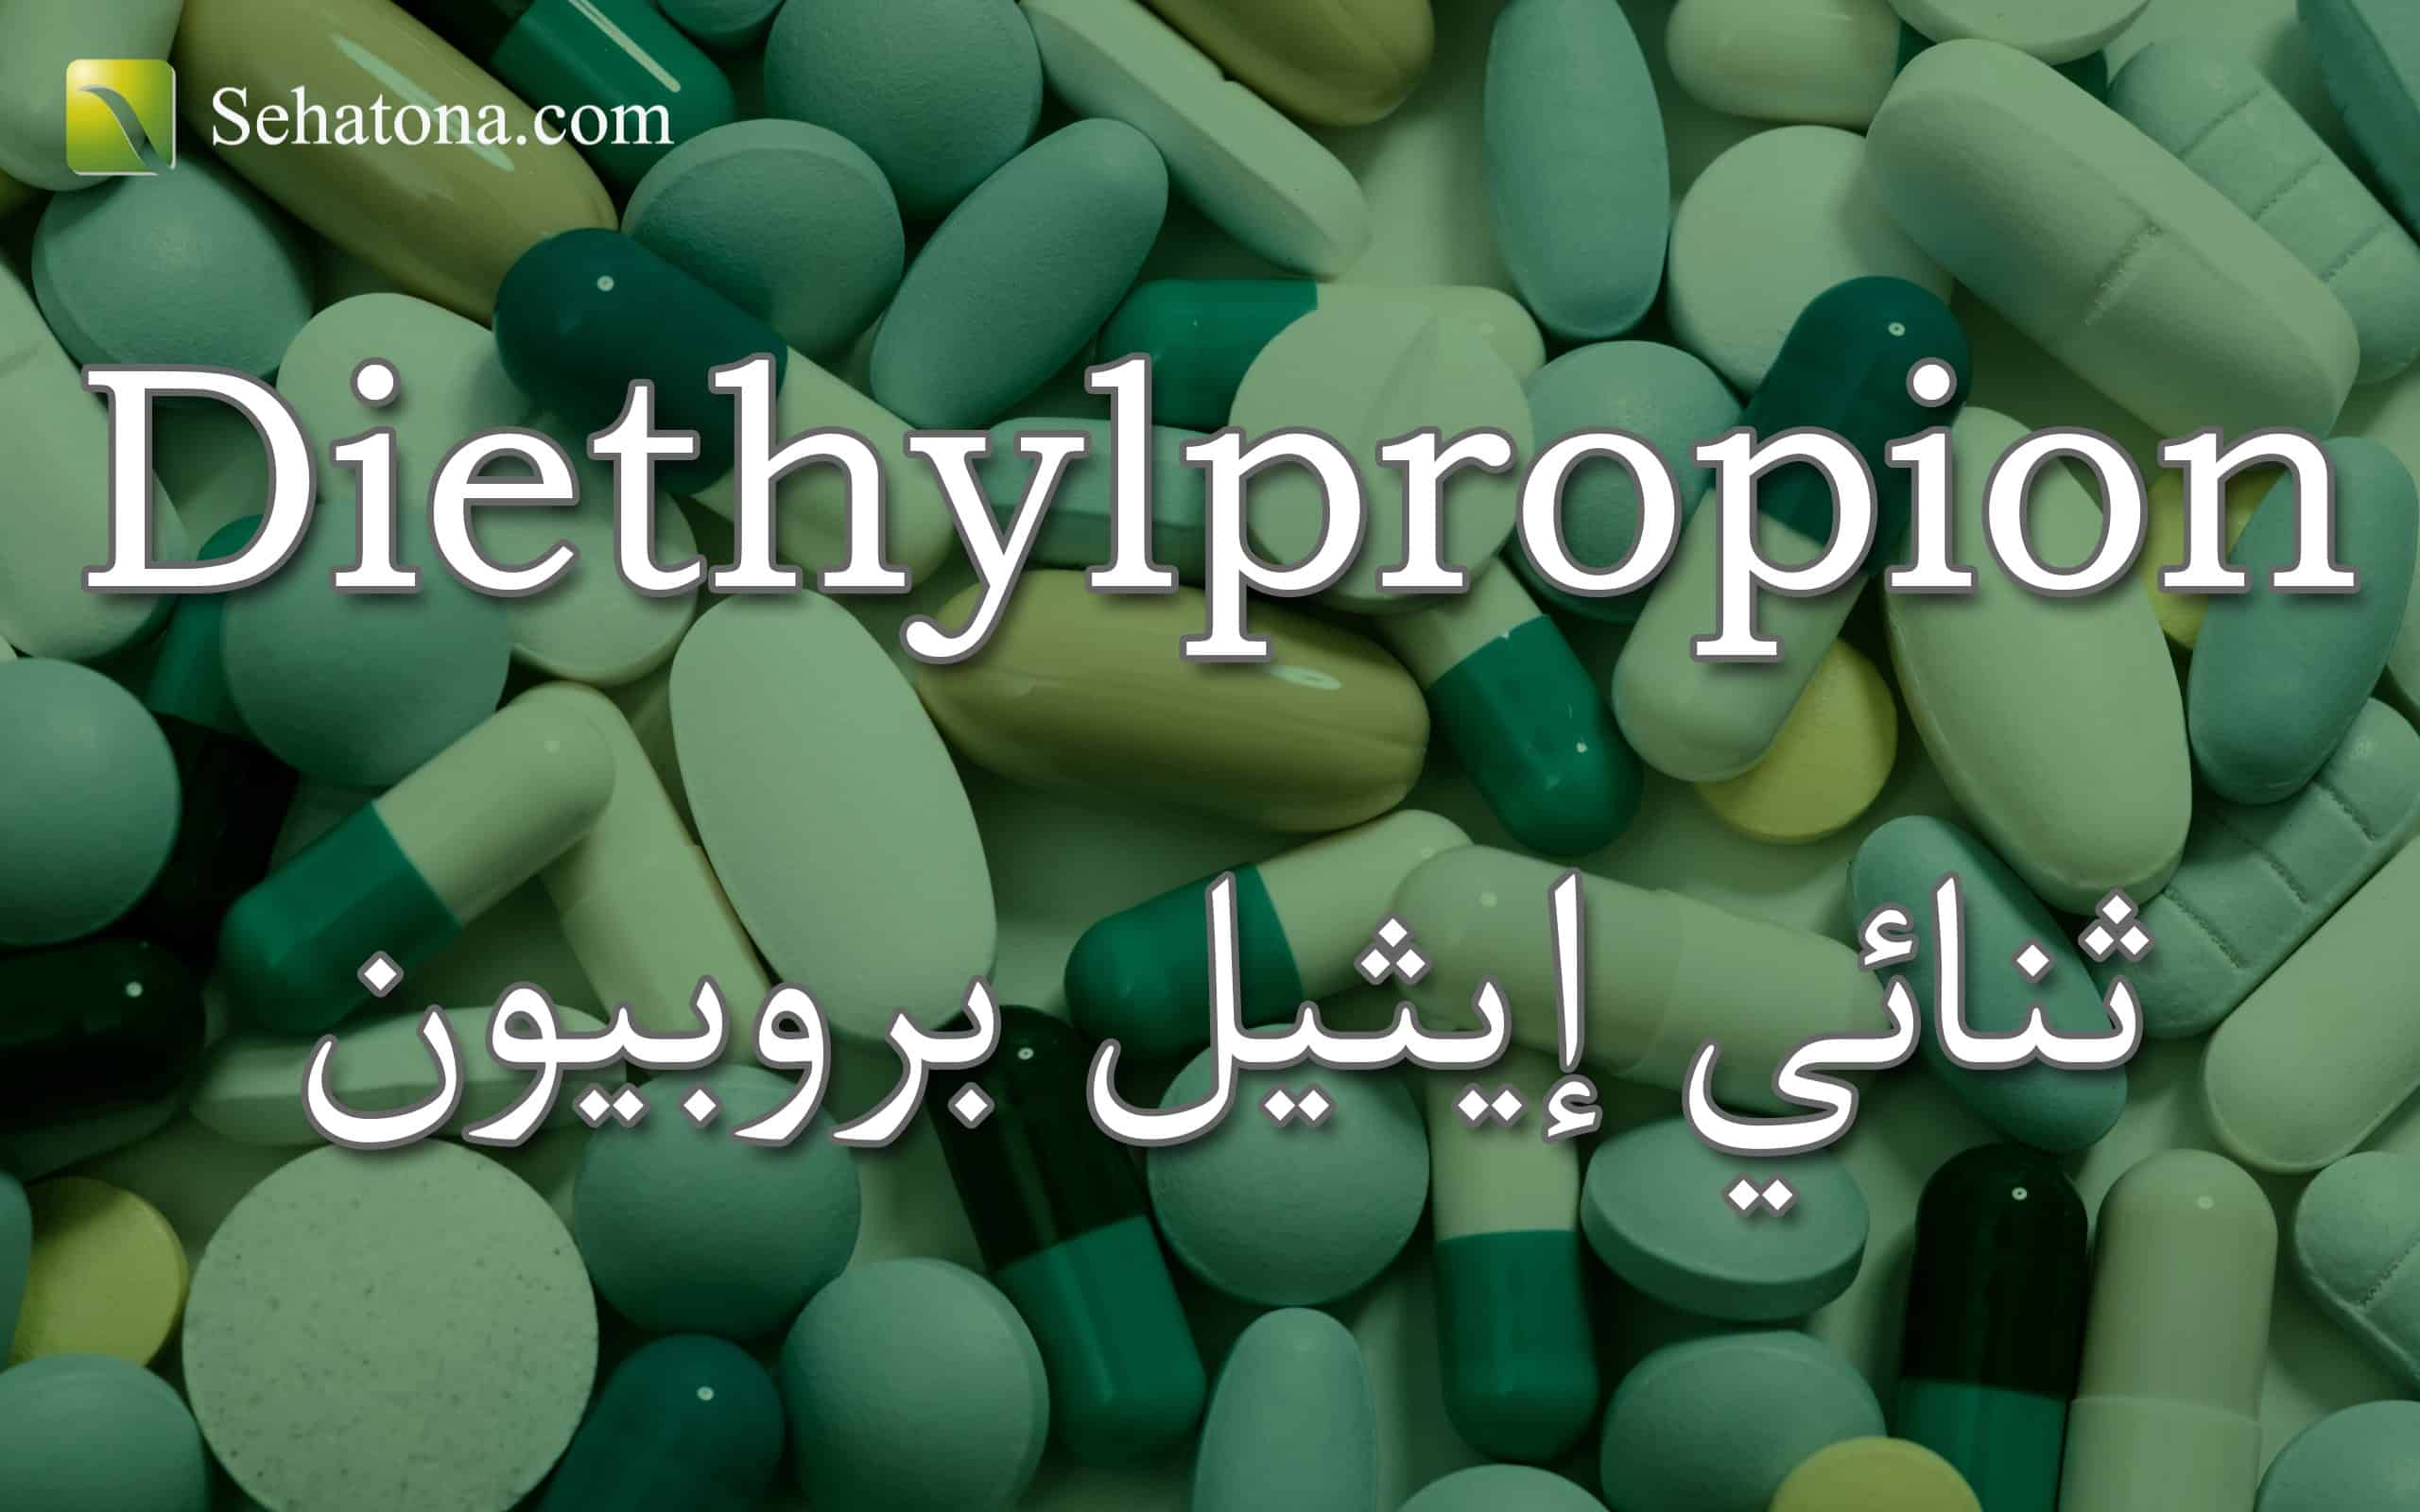 Diethylpropion